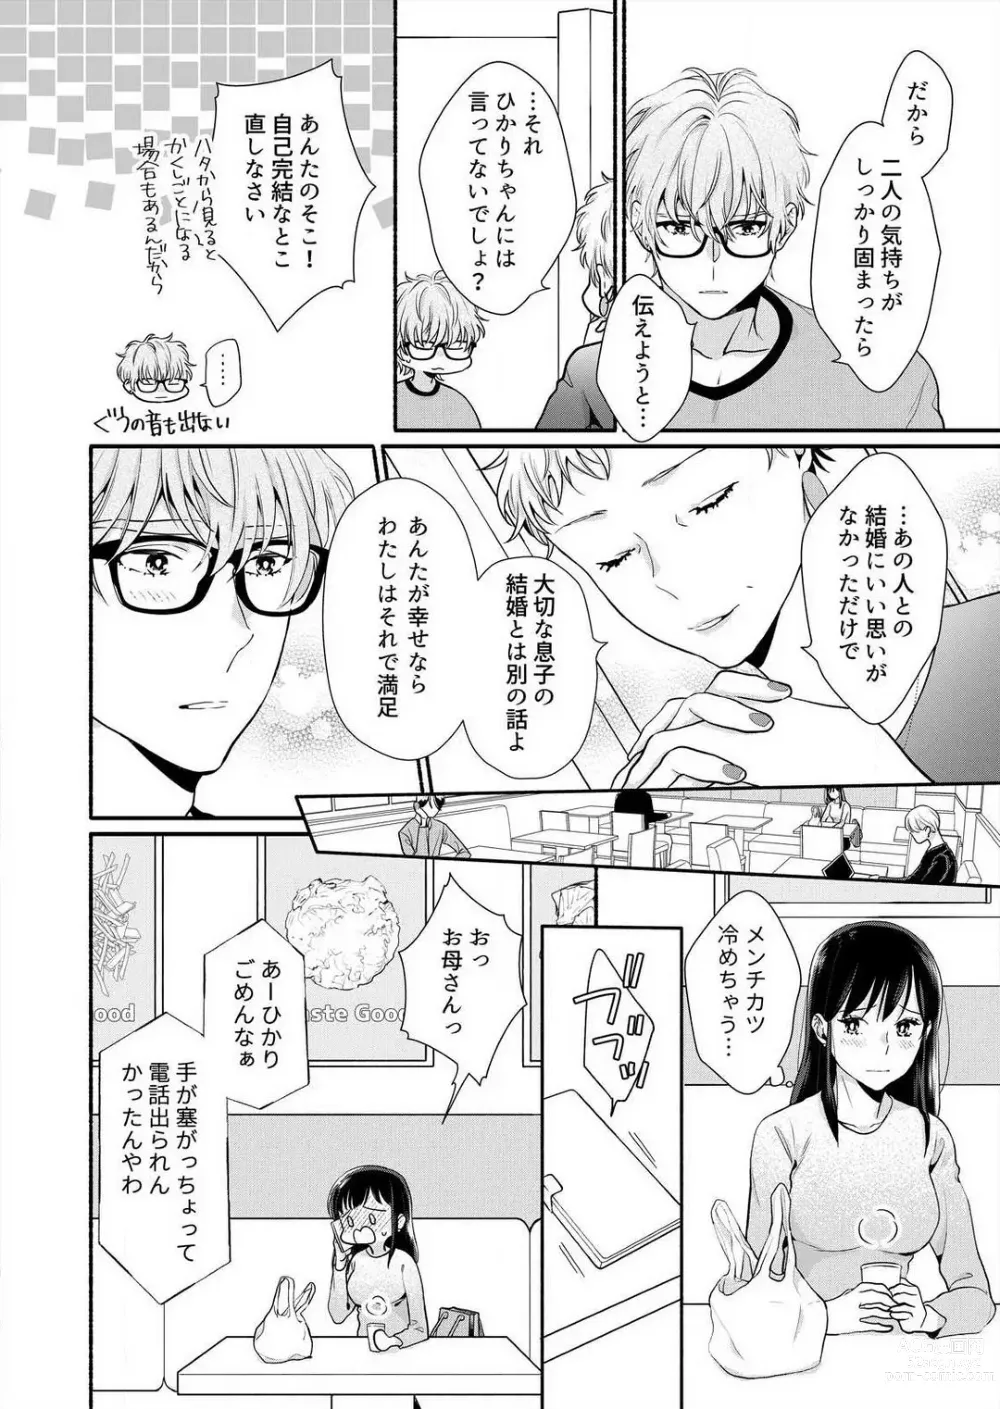 Page 190 of manga Suki Kawaii Guchagucha ni Shitai - Osananajimi wa Kojirase Sugiteru 1-8